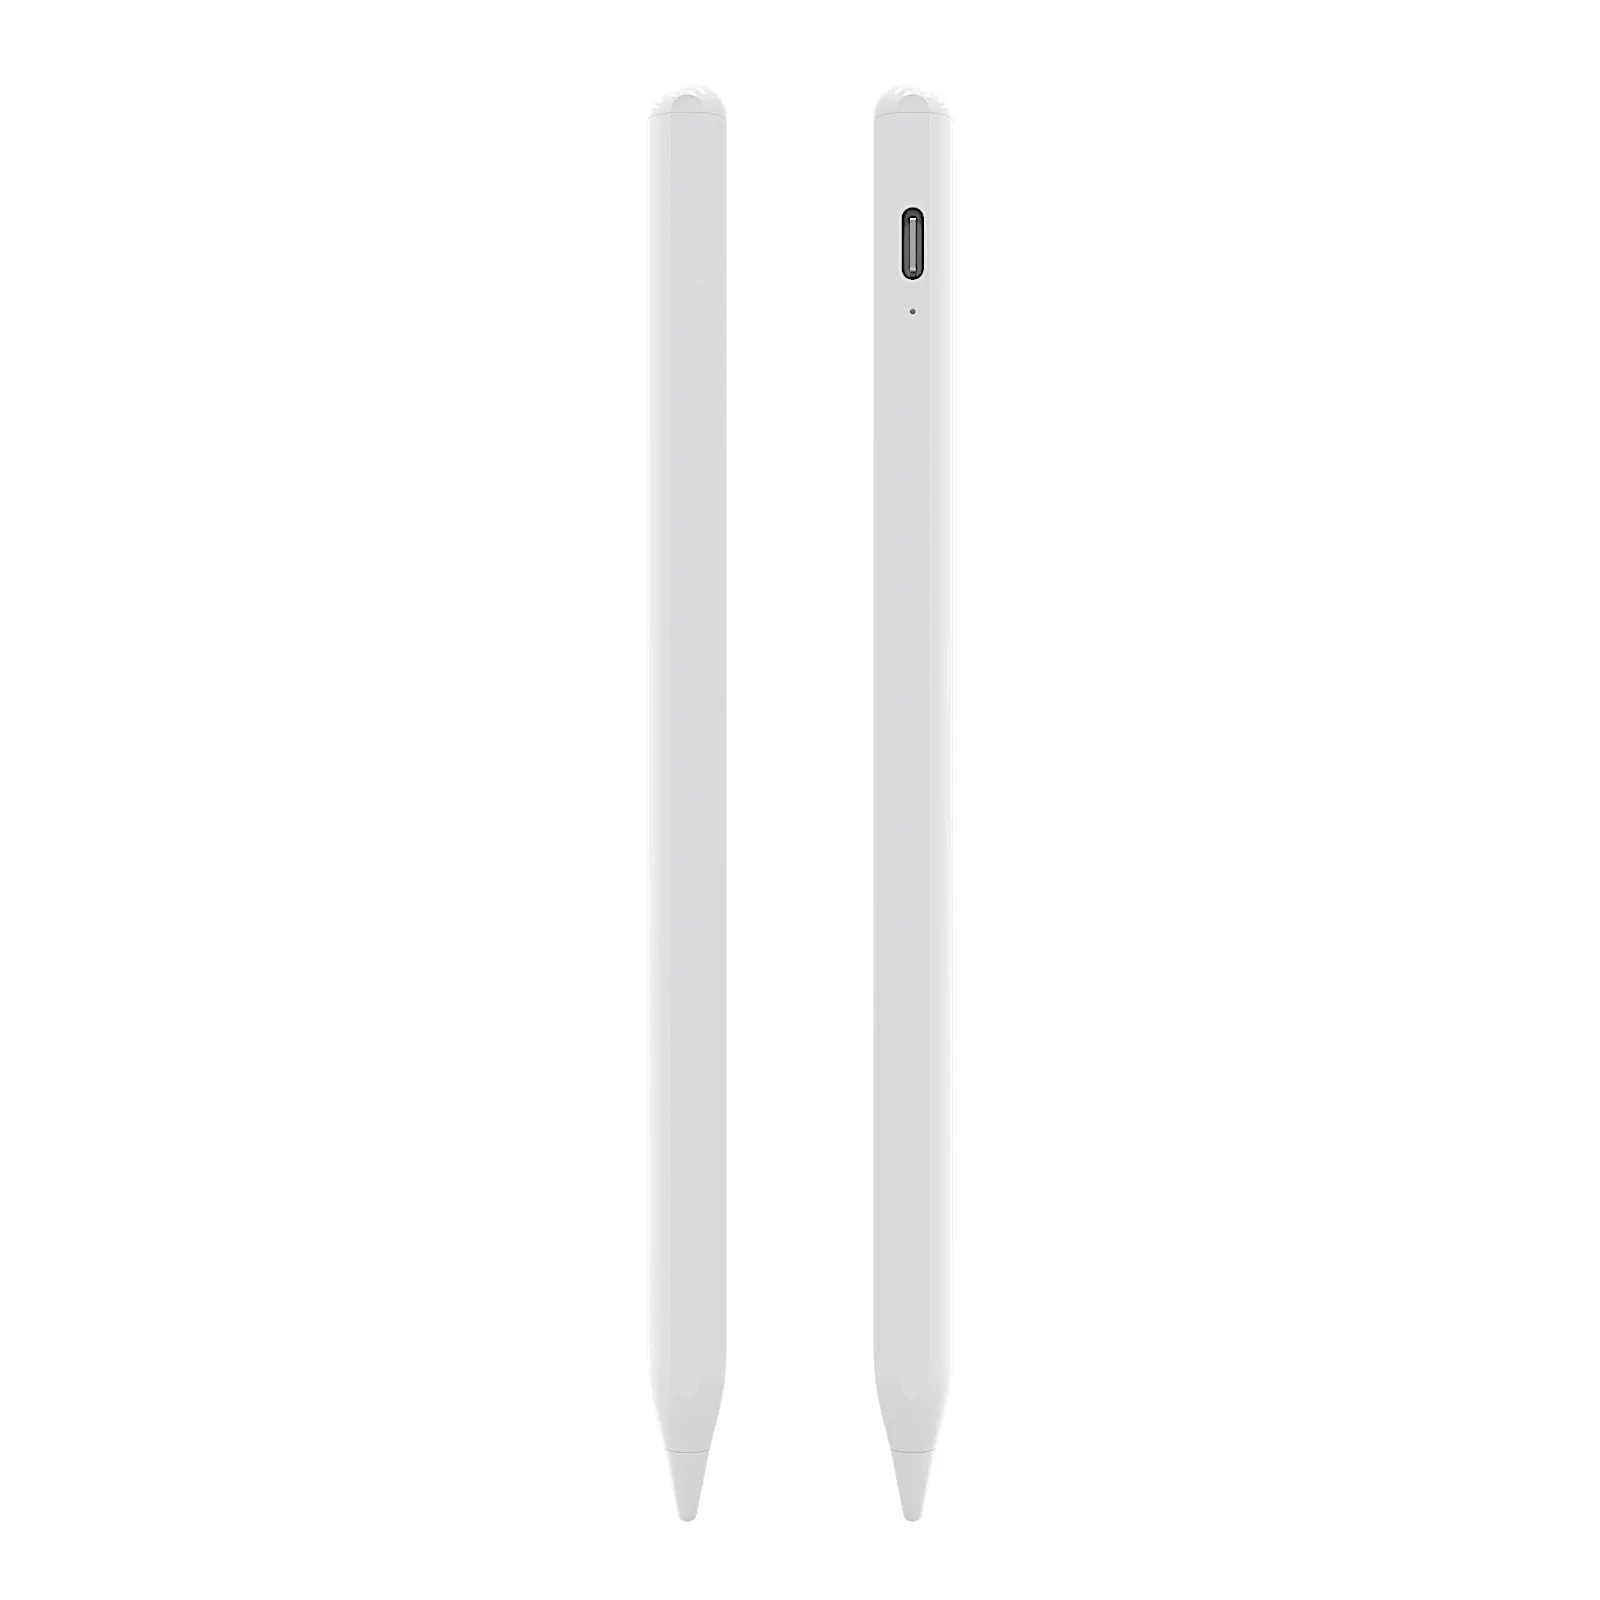 Factory wholesale aluminum capacitive touch active stylus s pen pencil tablet palm rejection stylus pen